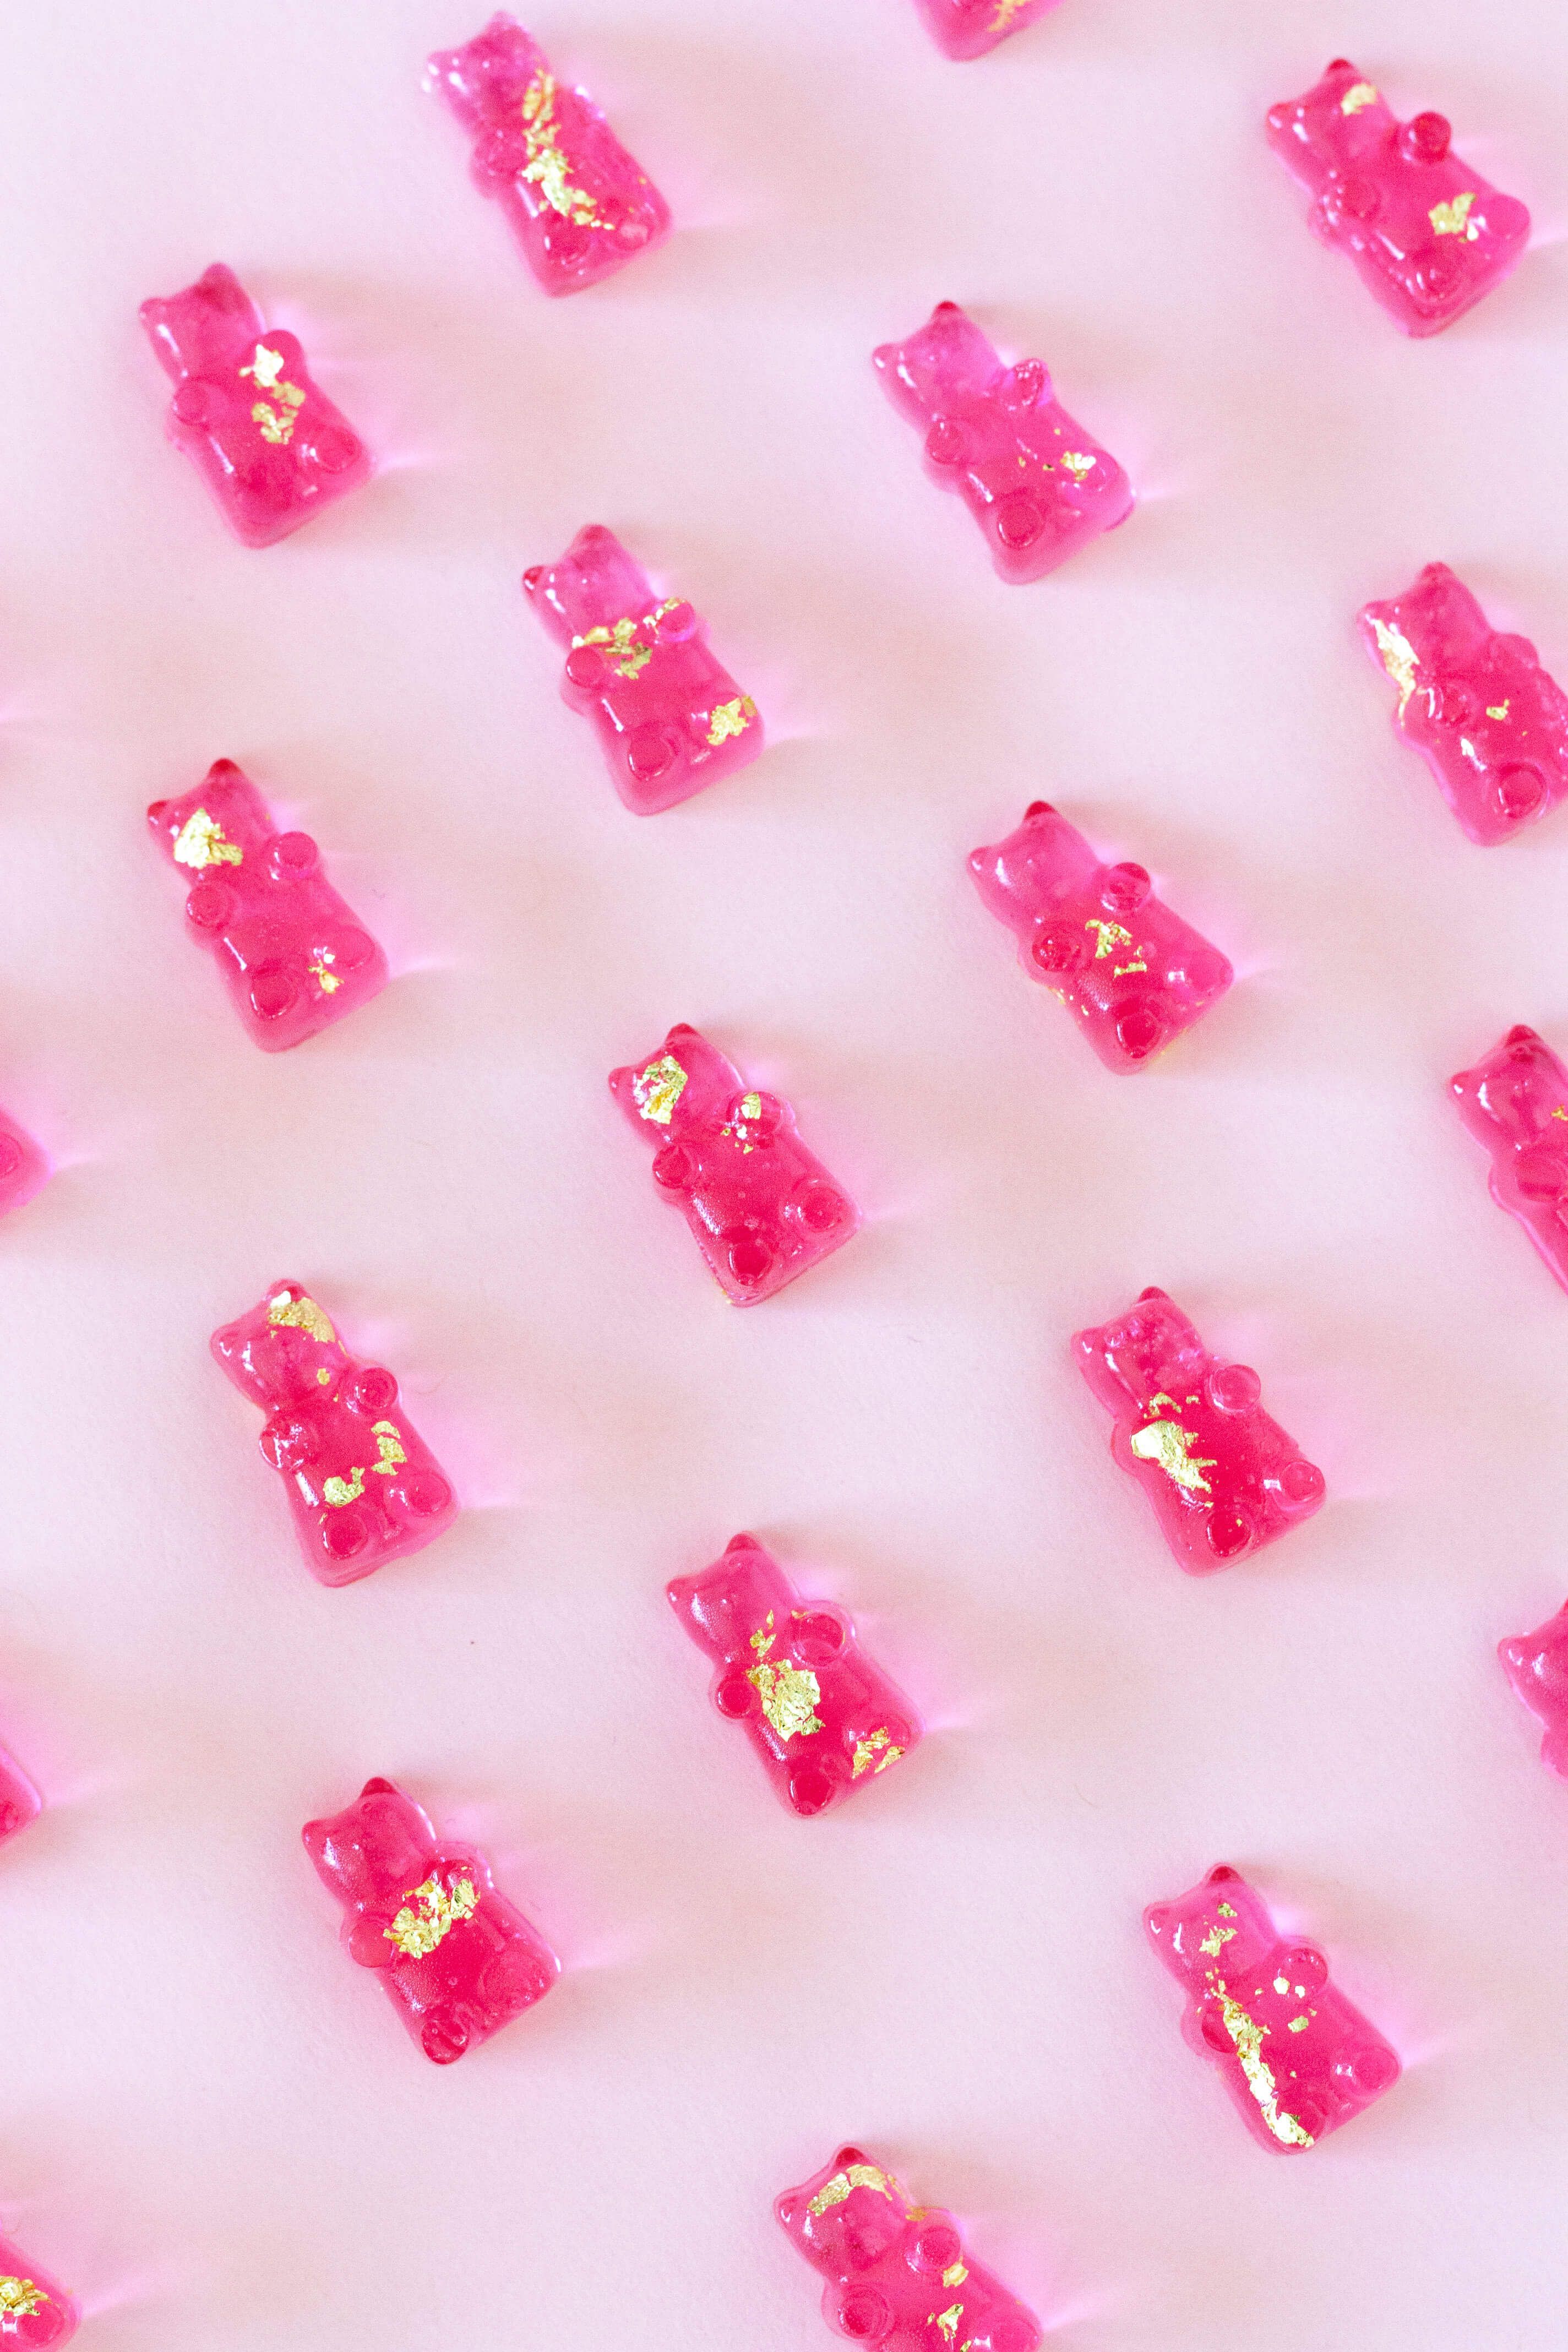 Pink Gummy Bears Wallpaper